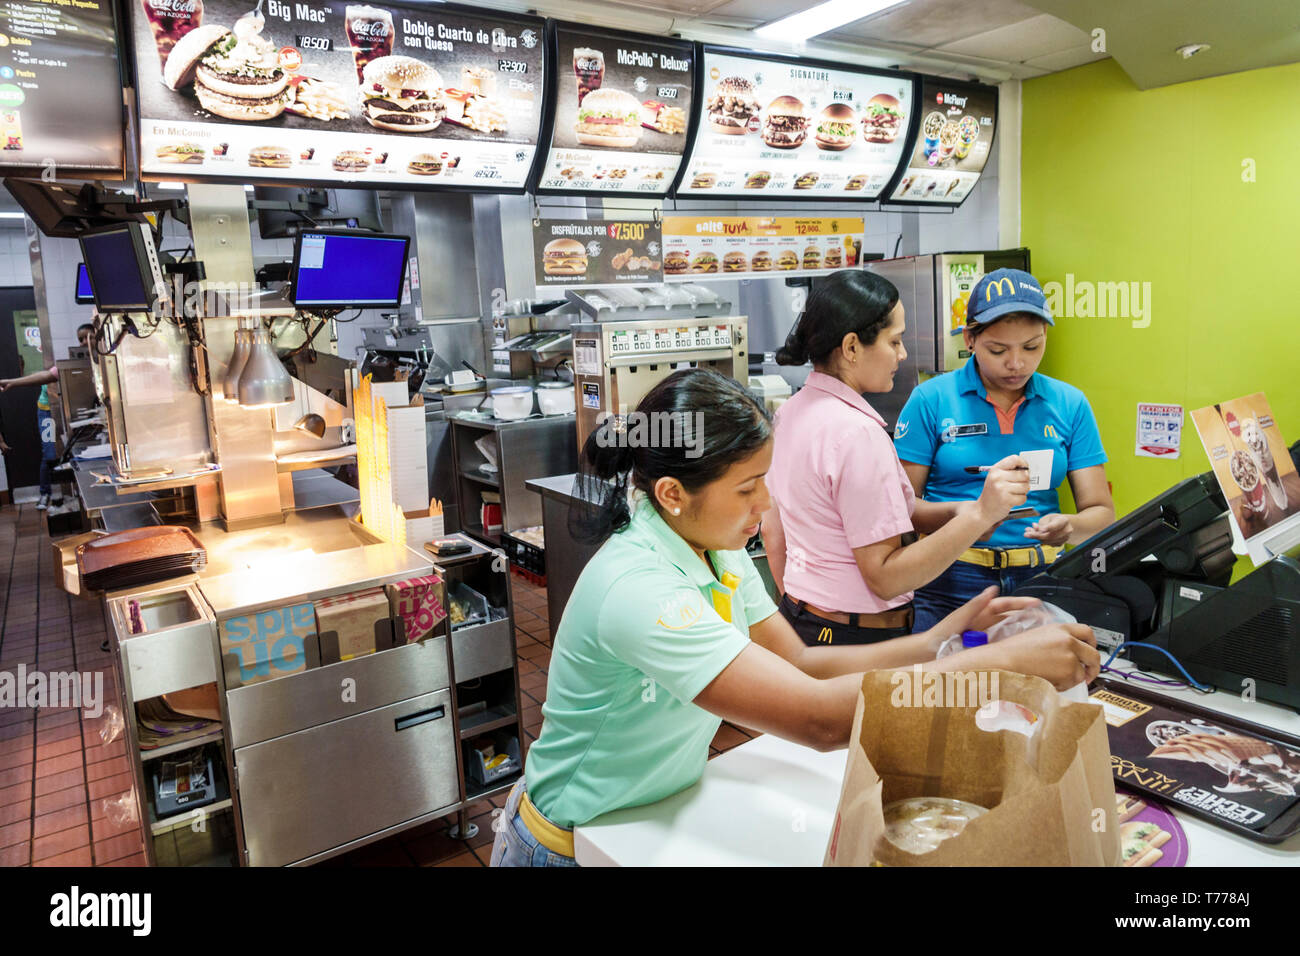 Cartagena Colombia, Bocagrande, McDonald's, hamburguesas comida rápida, restaurante restaurantes restaurantes cafeterías, interior, mostrador, residente hispano resid Foto de stock